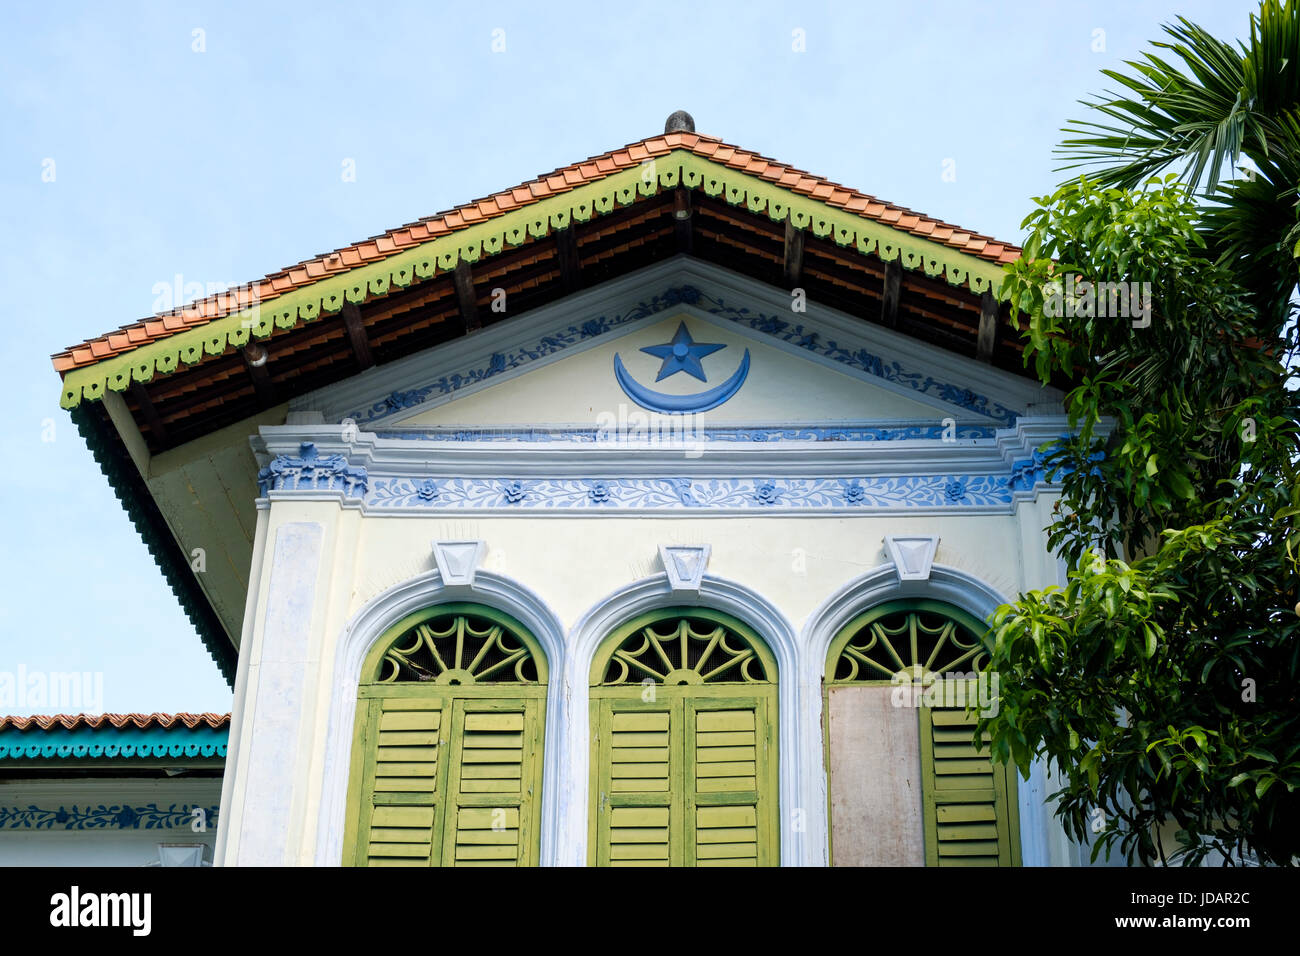 El piso superior y el techo del Museo Islámico de Penang (AKA Syed Alatas Mansion), George Town, Pulau Pinang (Penang, Malasia). Foto de stock